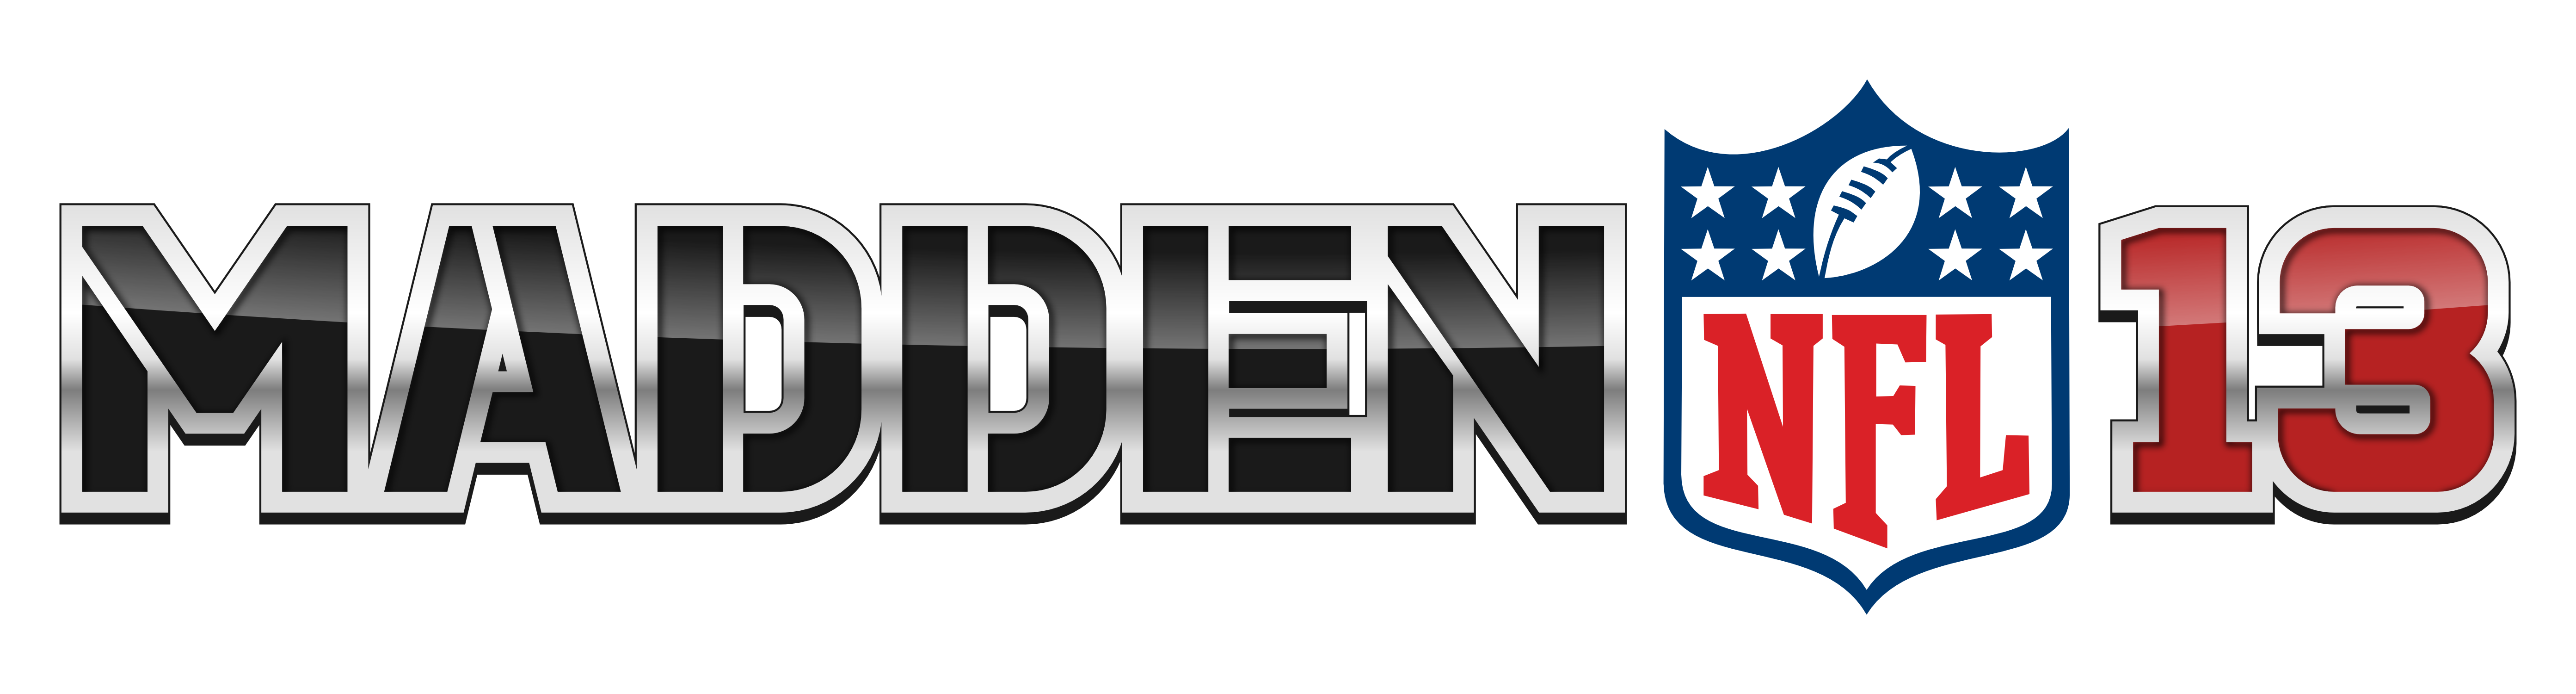 Madden NFL Logo PNG Free File Download